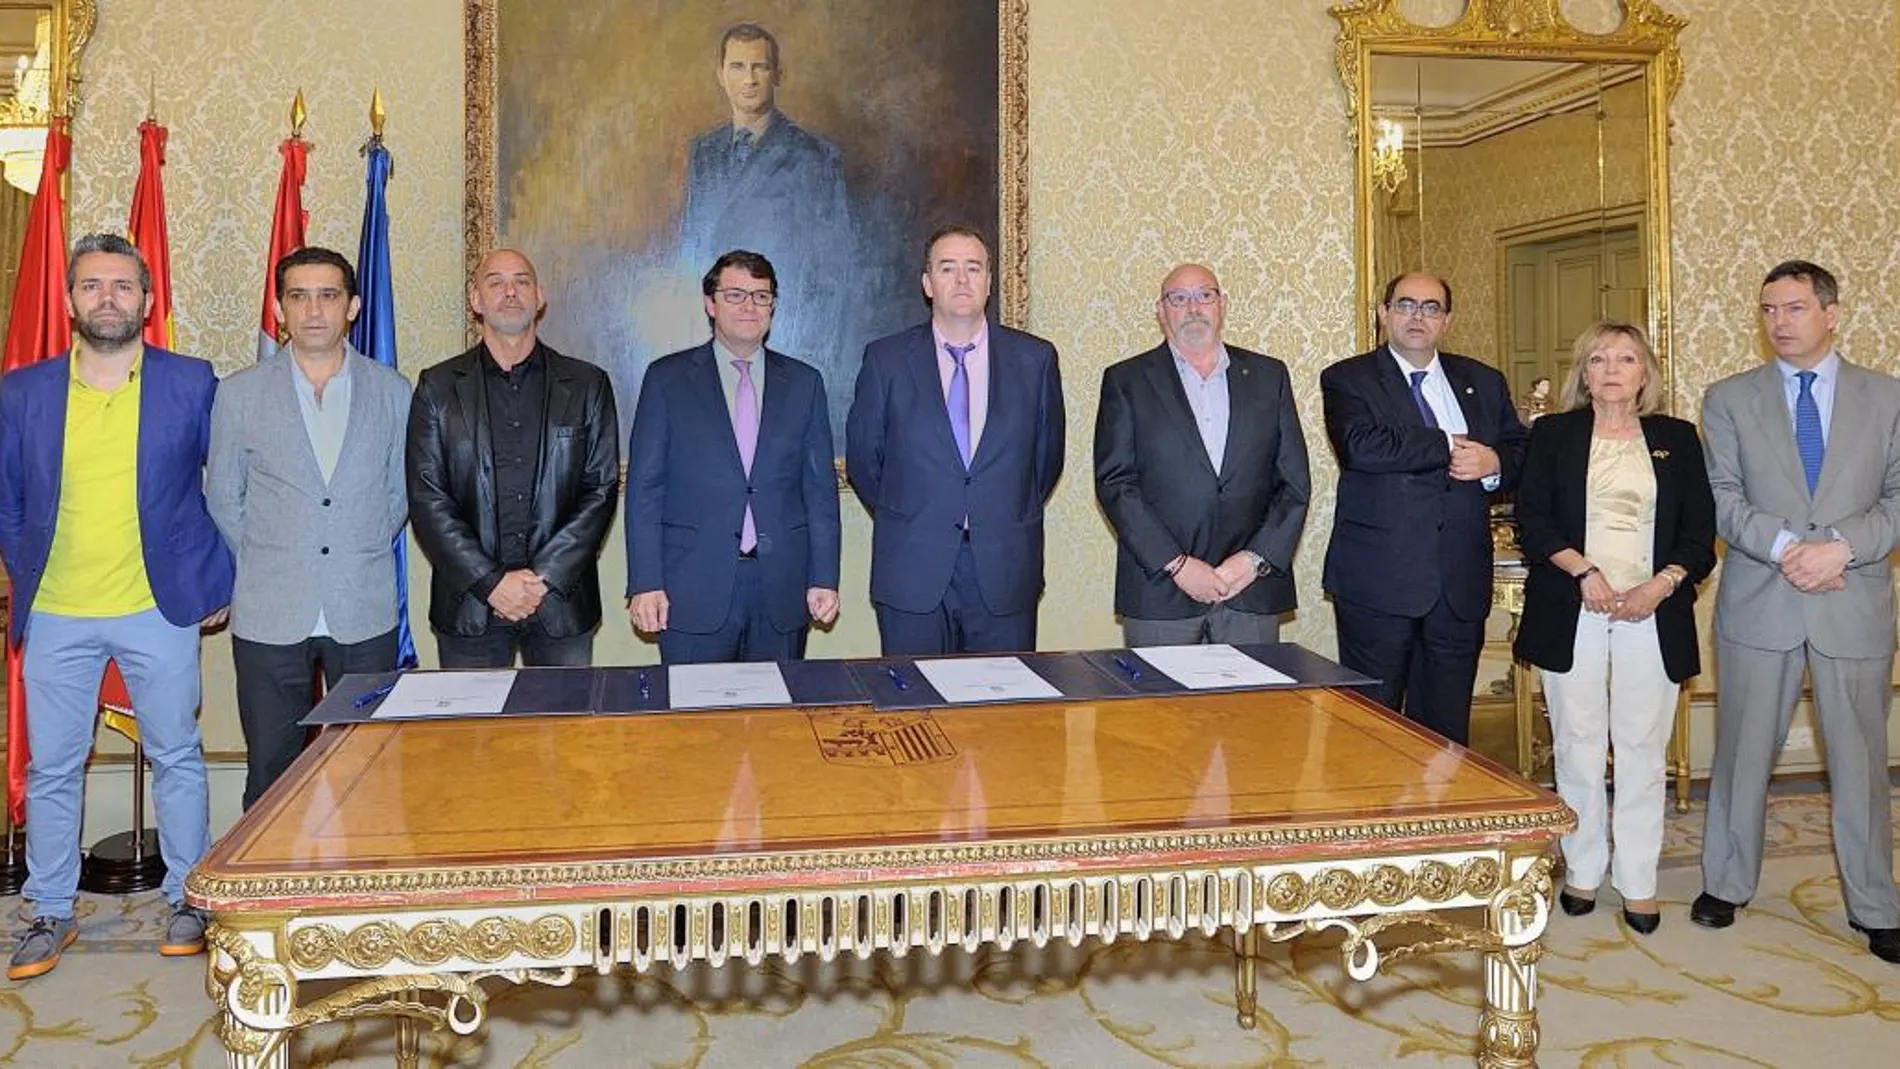 Foto de familia del alcalde Alfonso Fernández Mañueco con representantes sindicales y de la patronal, ayer en el Ayuntamiento de Salamanca, tras firmar el acuerdo / Ayto. Salamanca